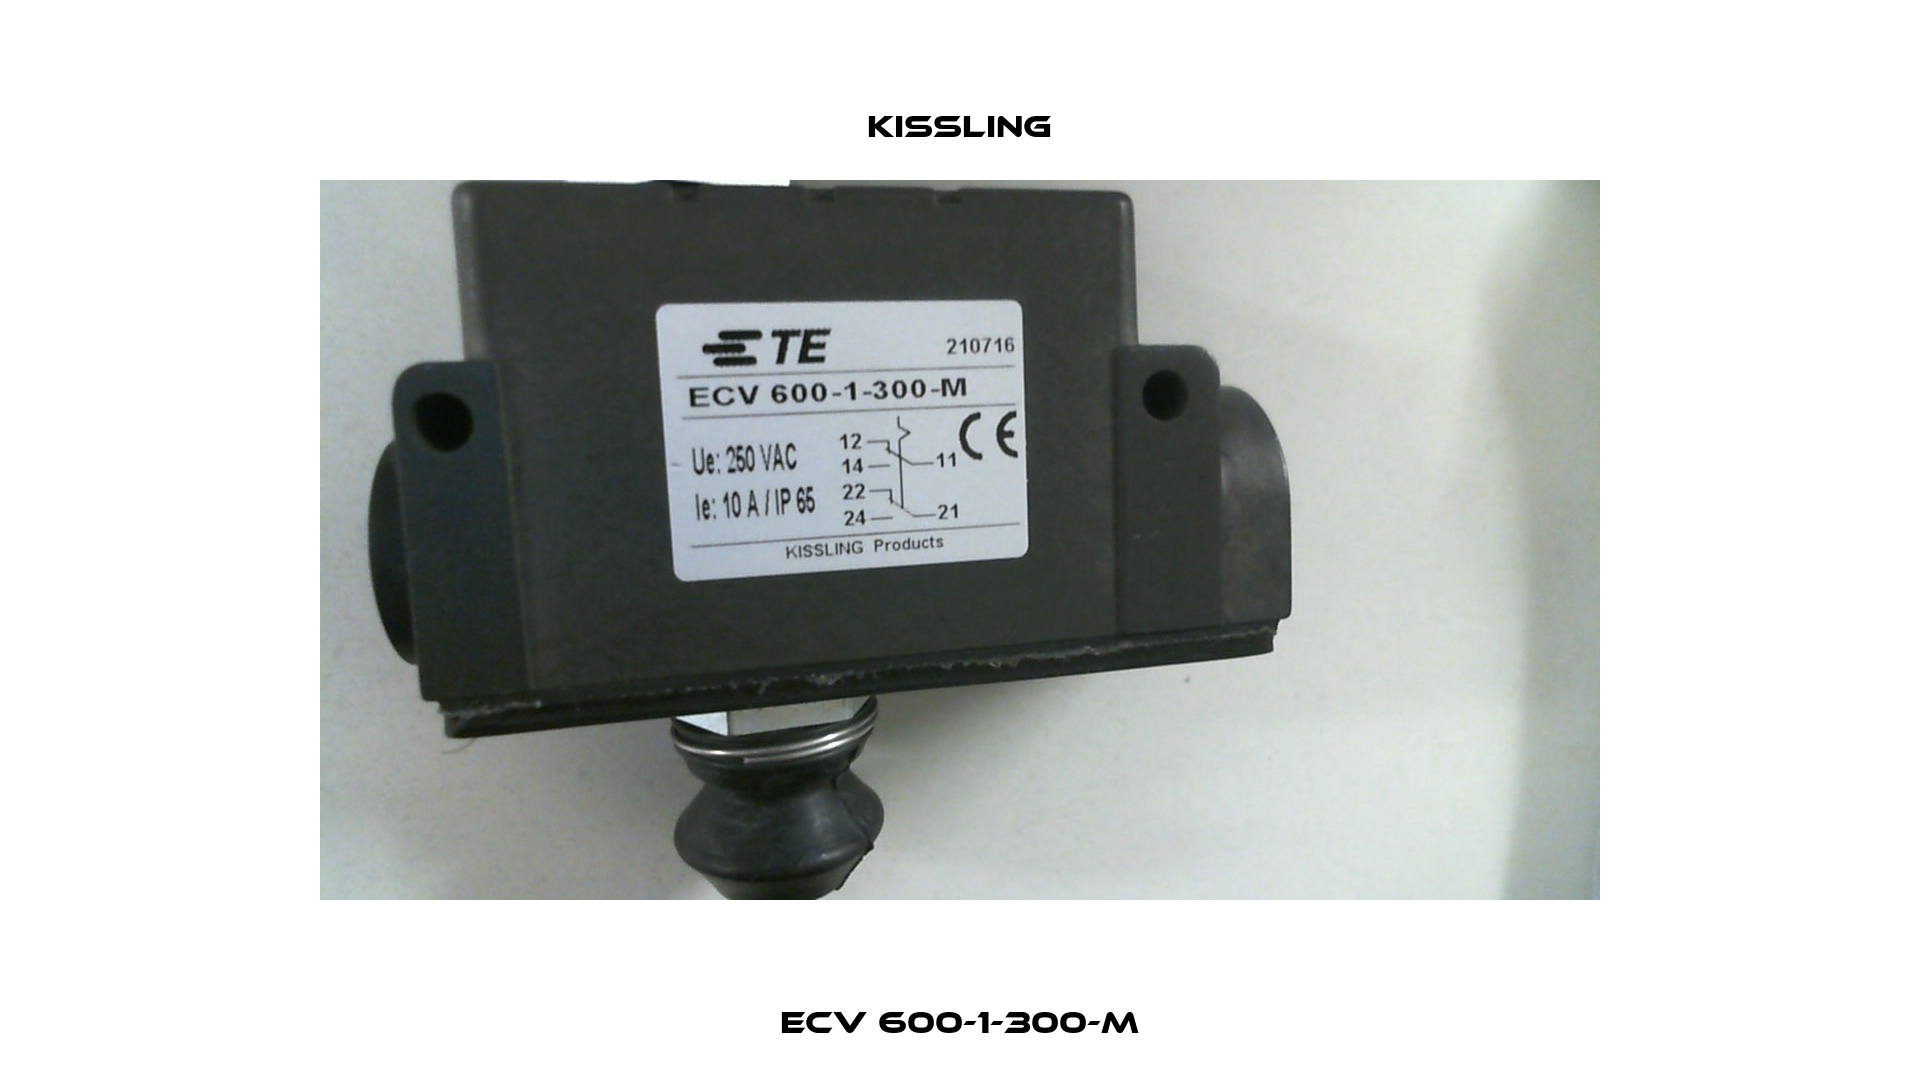 ECV 600-1-300-M Kissling